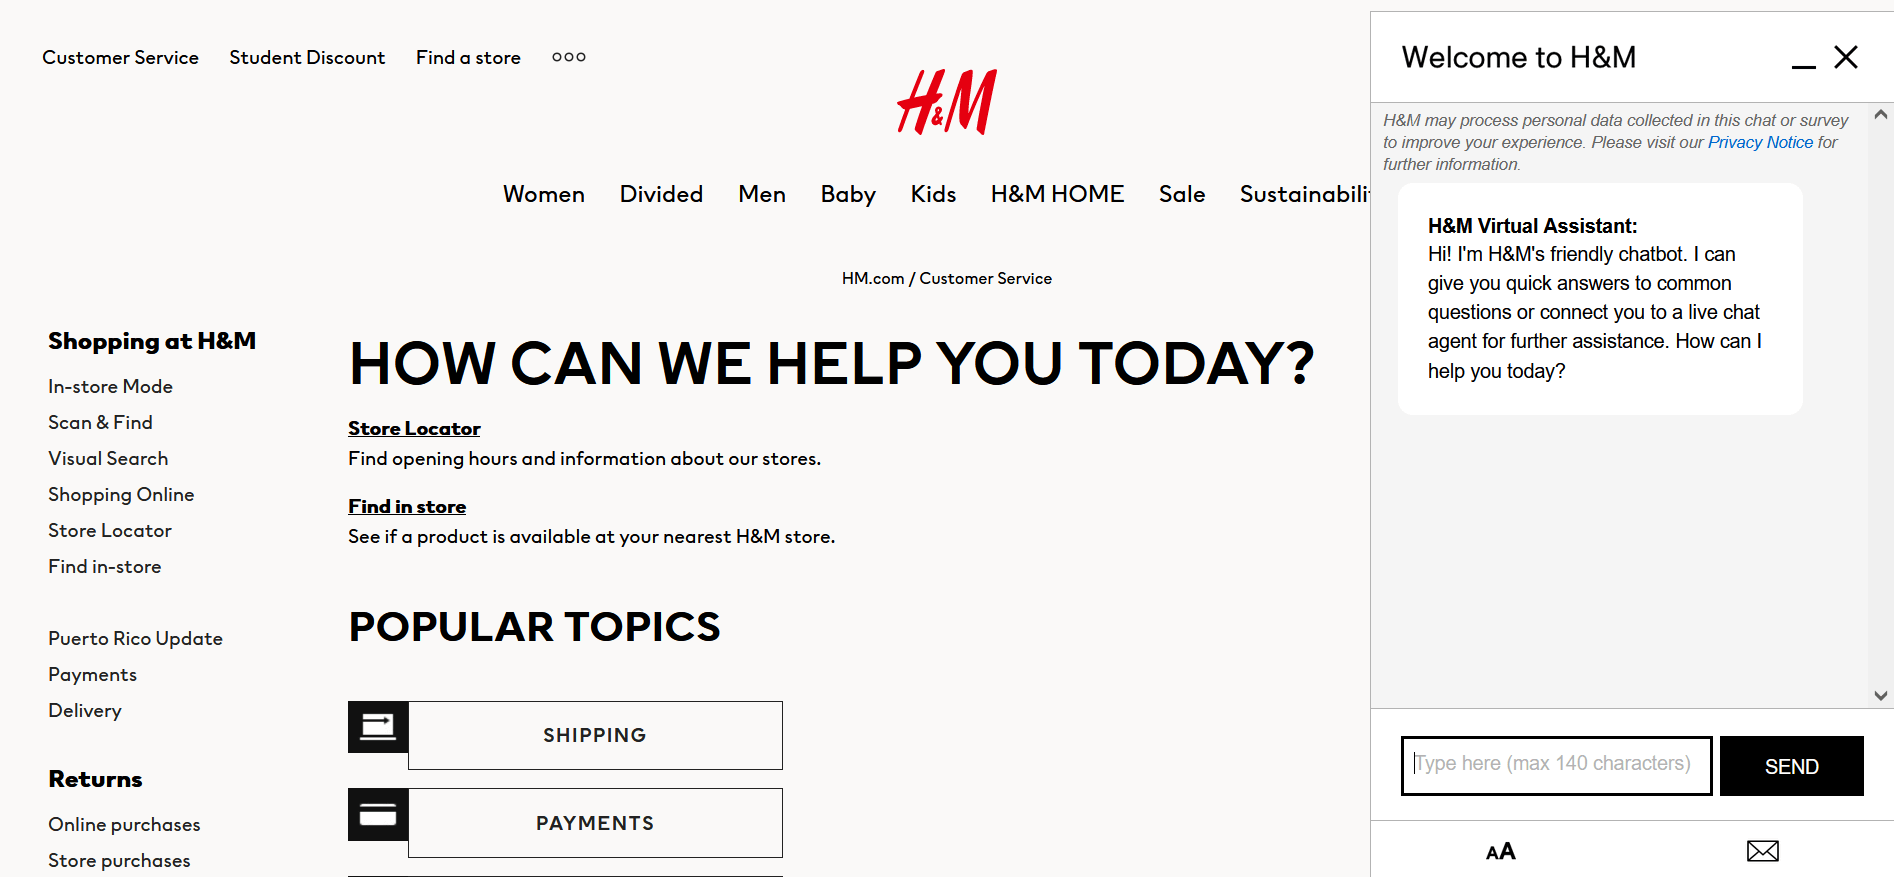 Captura de pantalla tomada de la página de servicio al cliente de H&M con la ventana adicional del chatbot desplegada